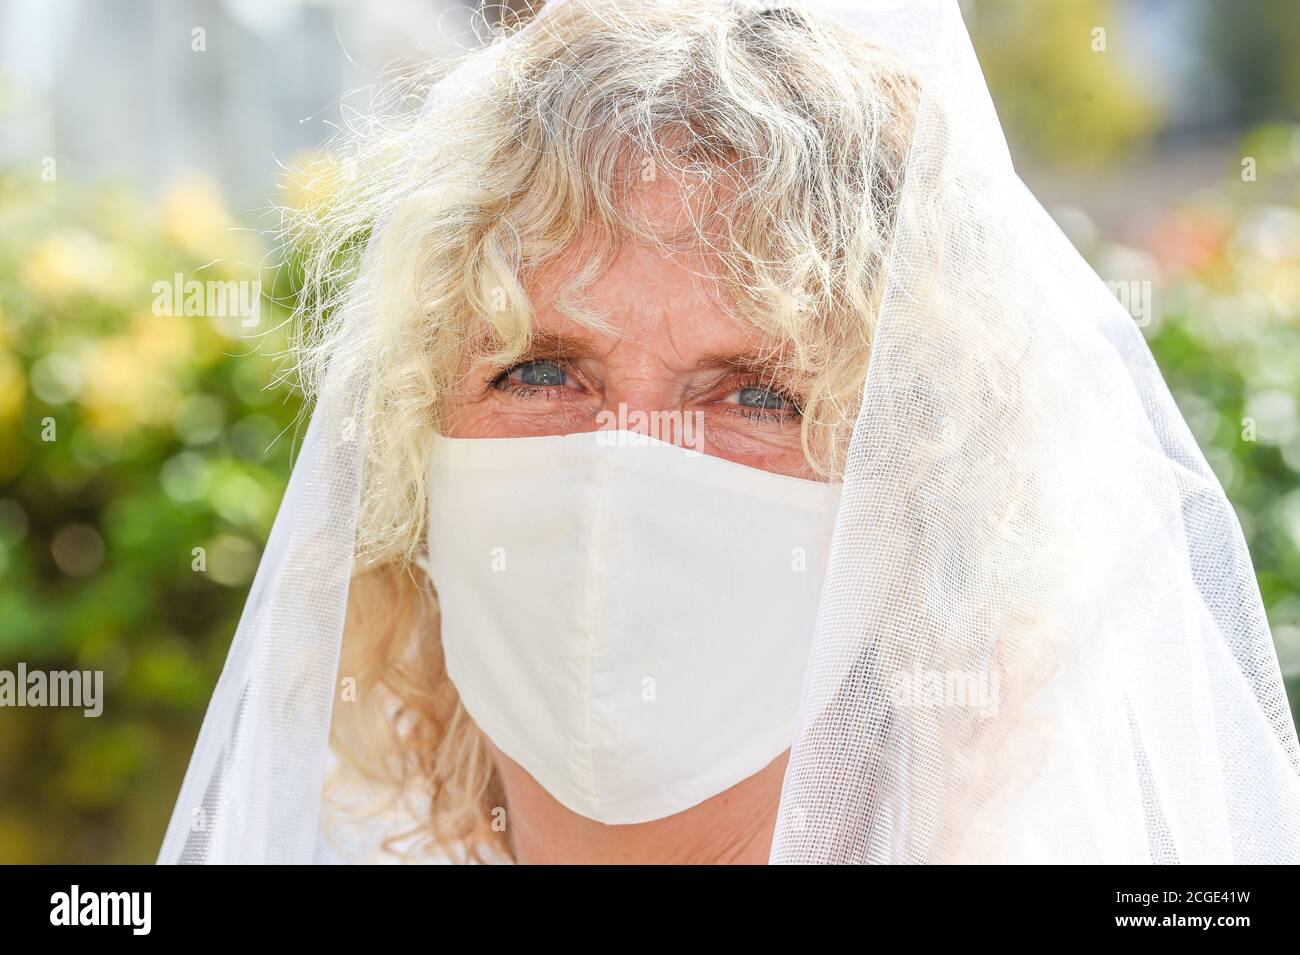 Reife Frau weiblich trägt ihren Hochzeitsschleier und ein Gesicht Maske während Coronavirus COOVID-19 Pandemiefoto von Simon Dack aufgenommen Stockfoto